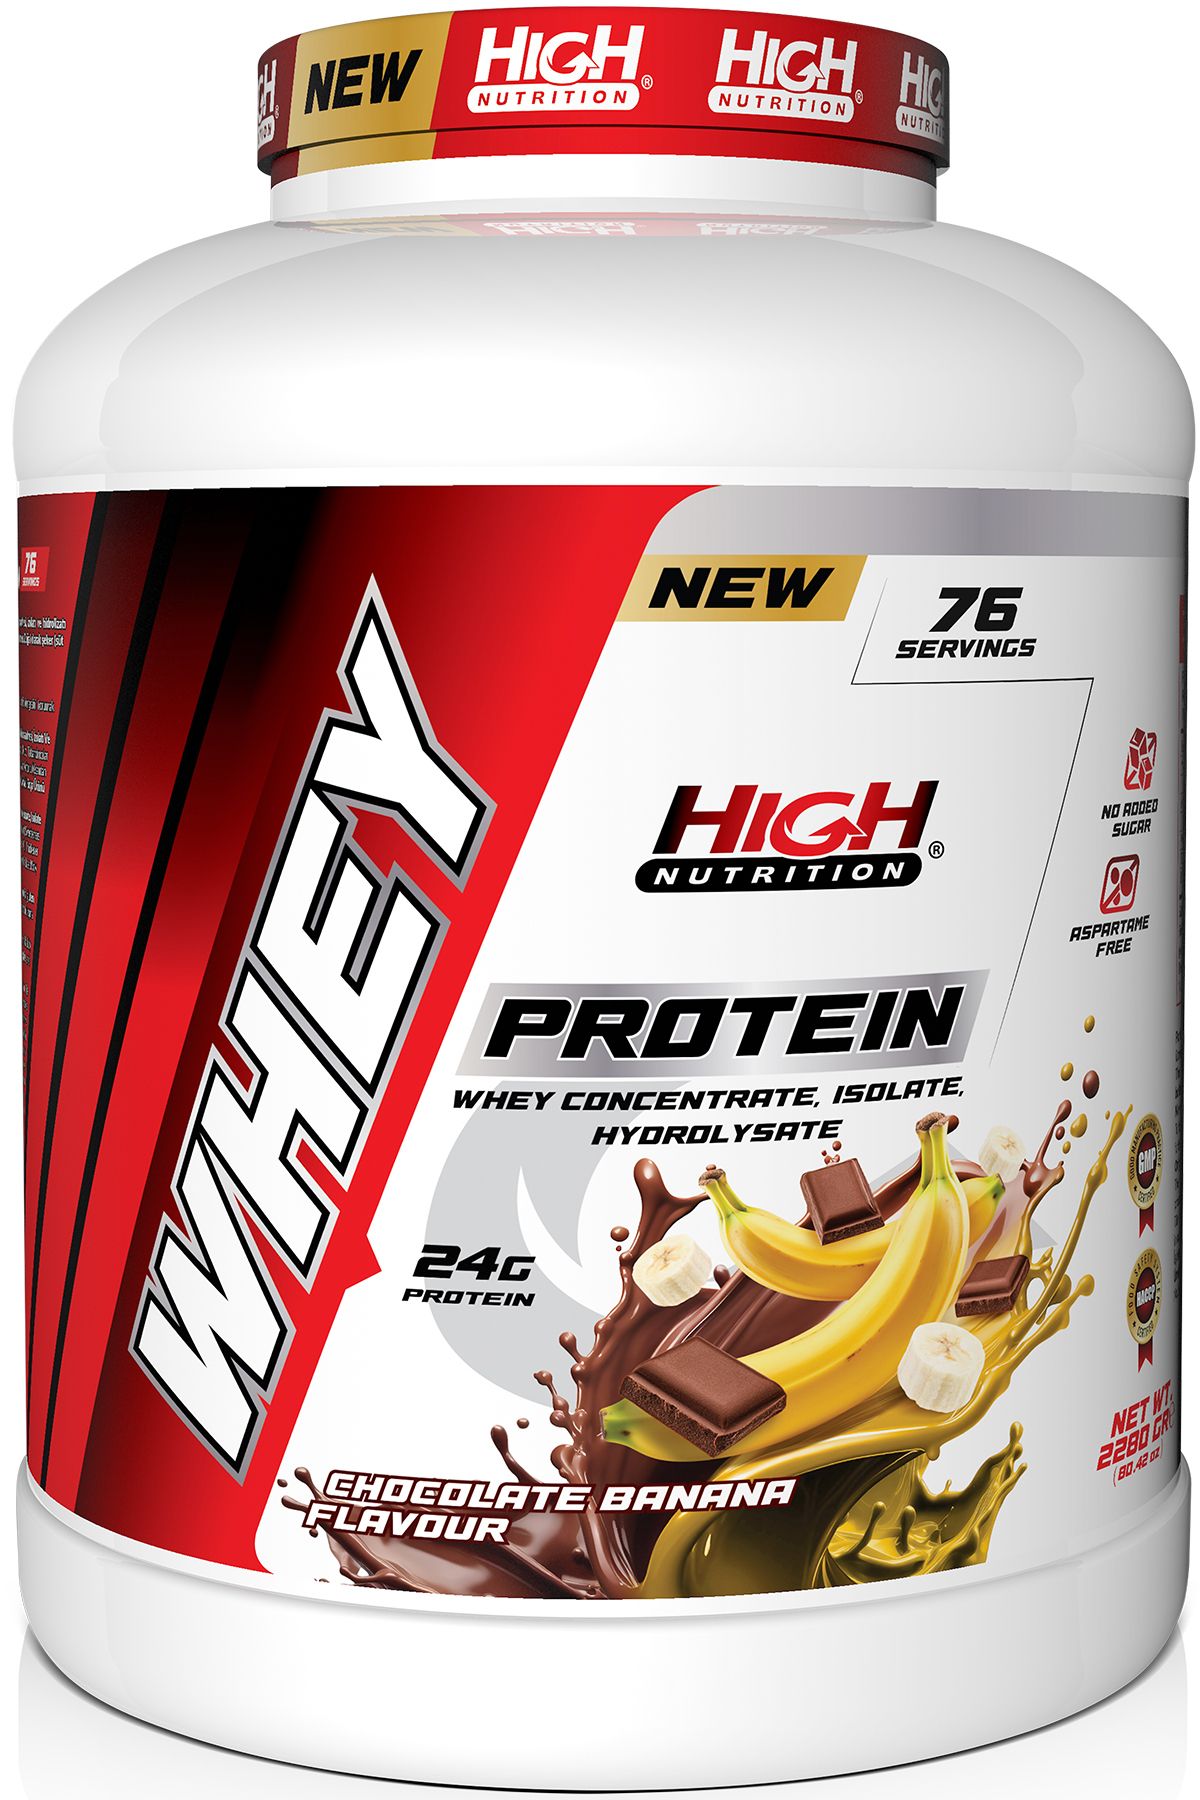 High Nutrition Protein Tozu 2280 Gr Çikolata Muz Aromalı Whey Protein 24 Gram Protein 76 Servis